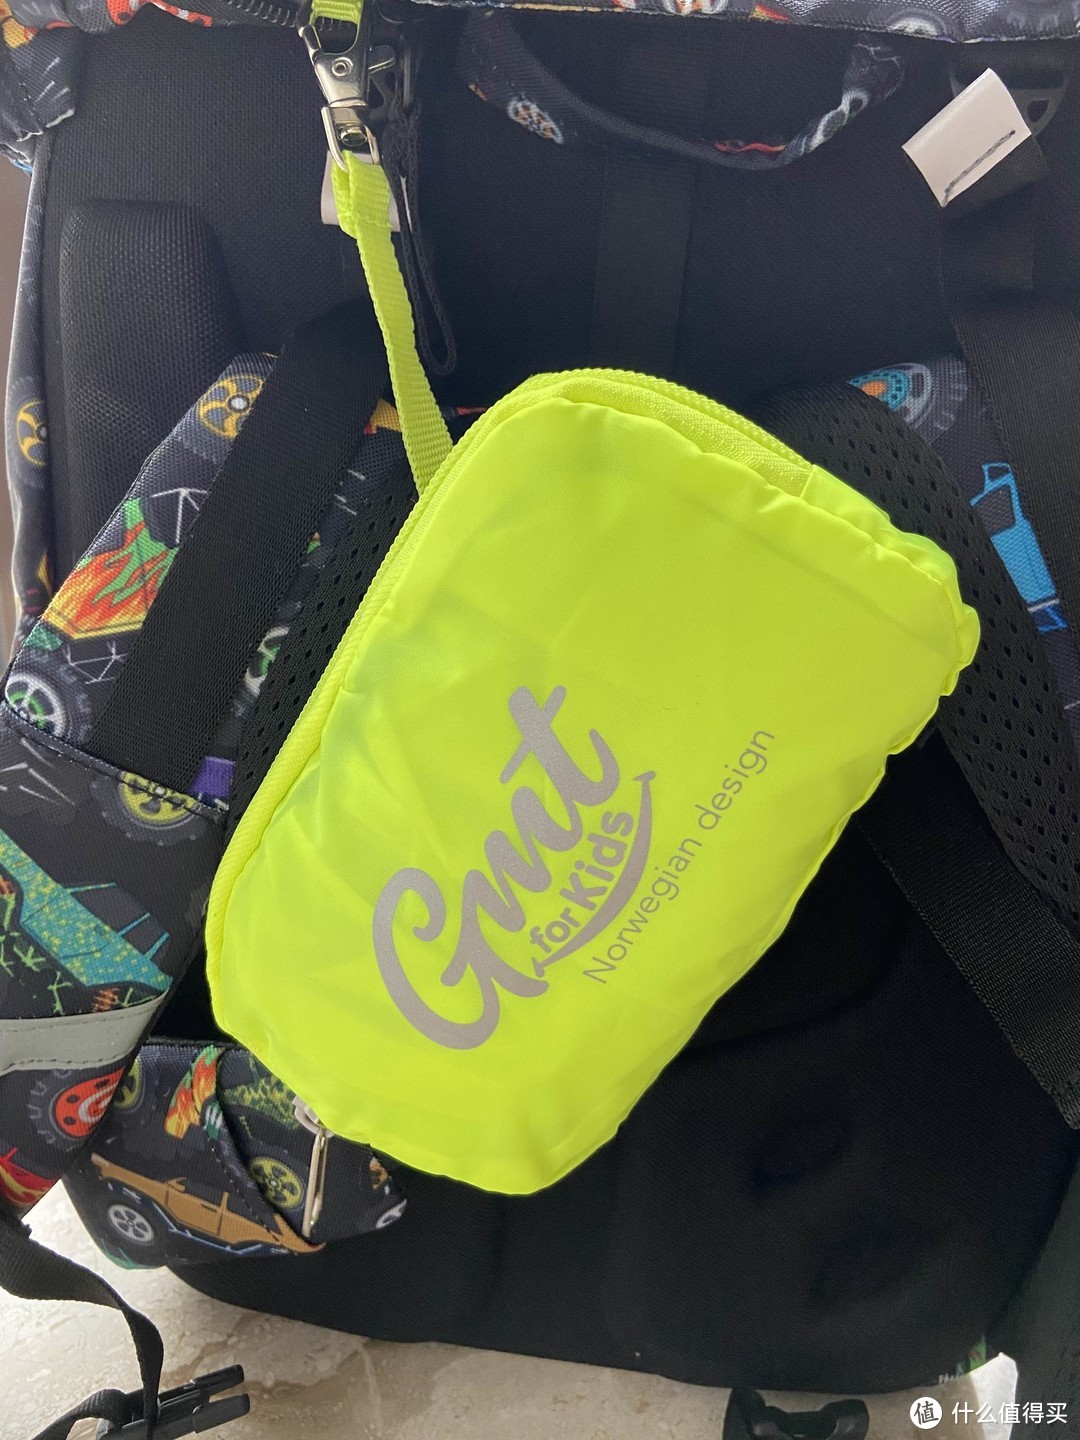 孩子的生日礼物——GMT for Kids奇幻卡车护脊儿童书包